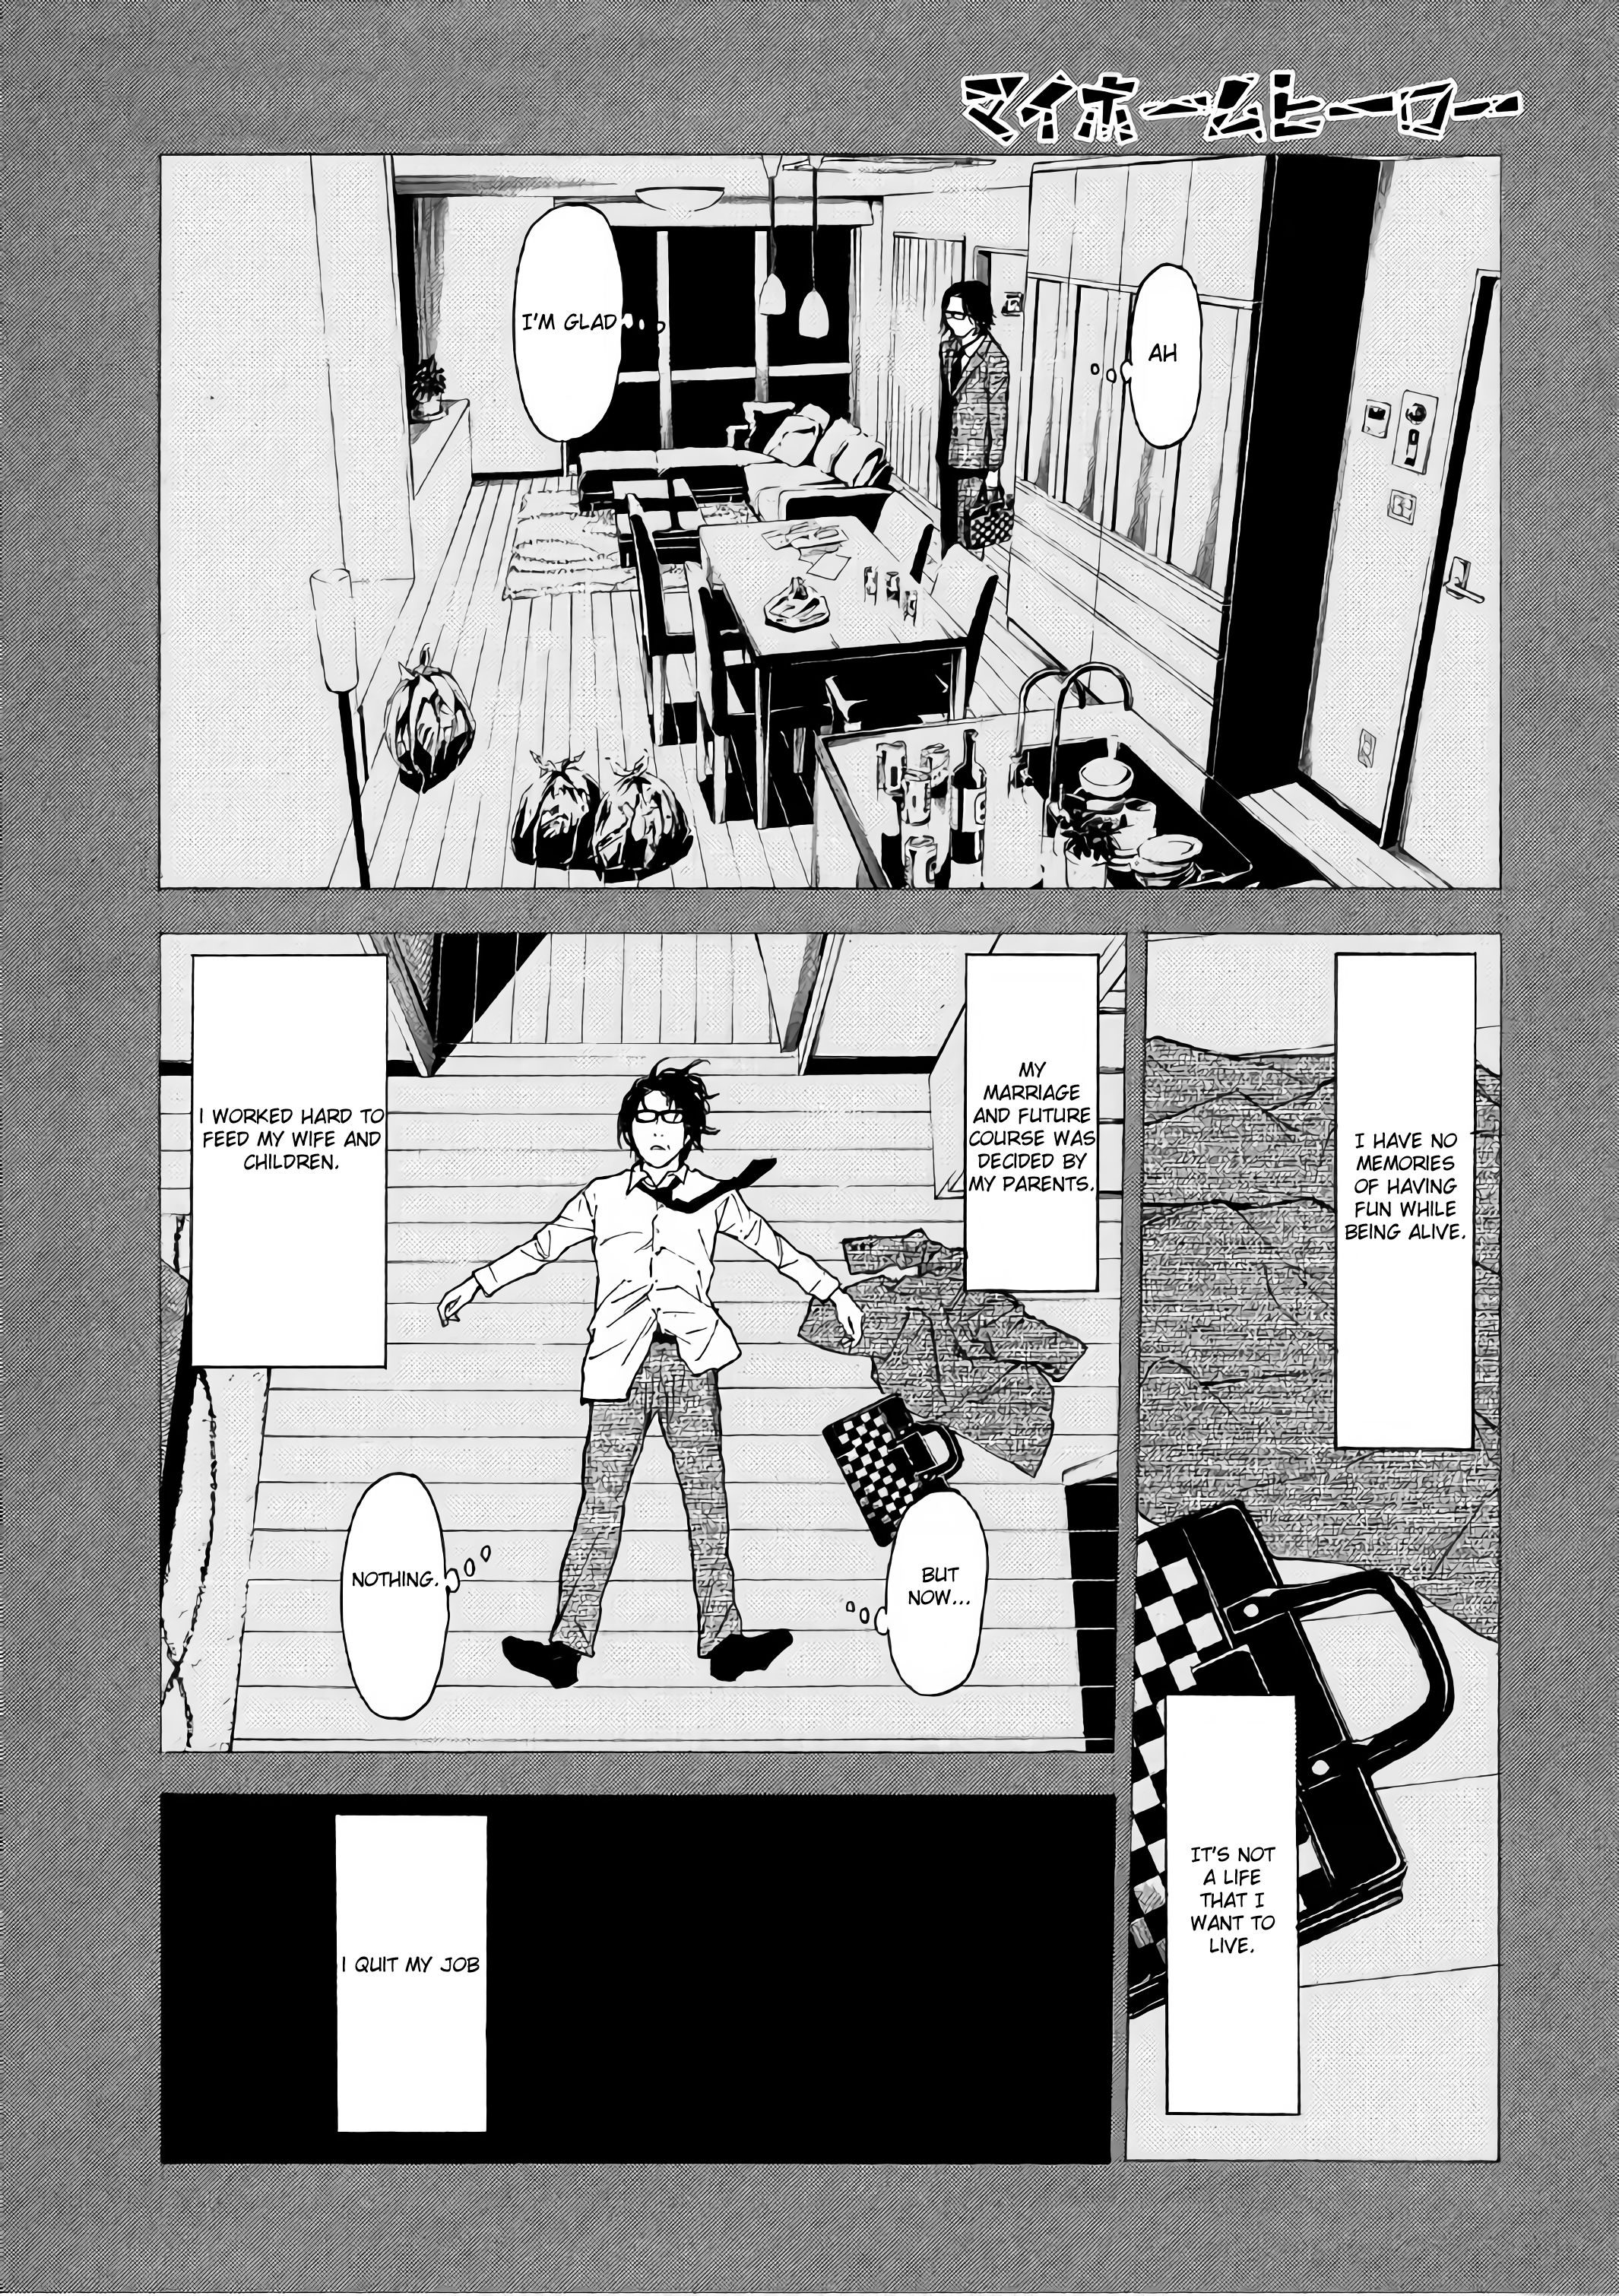 Runway de Waratte Manga - Chapter 151 - Manga Rock Team - Read Manga Online  For Free